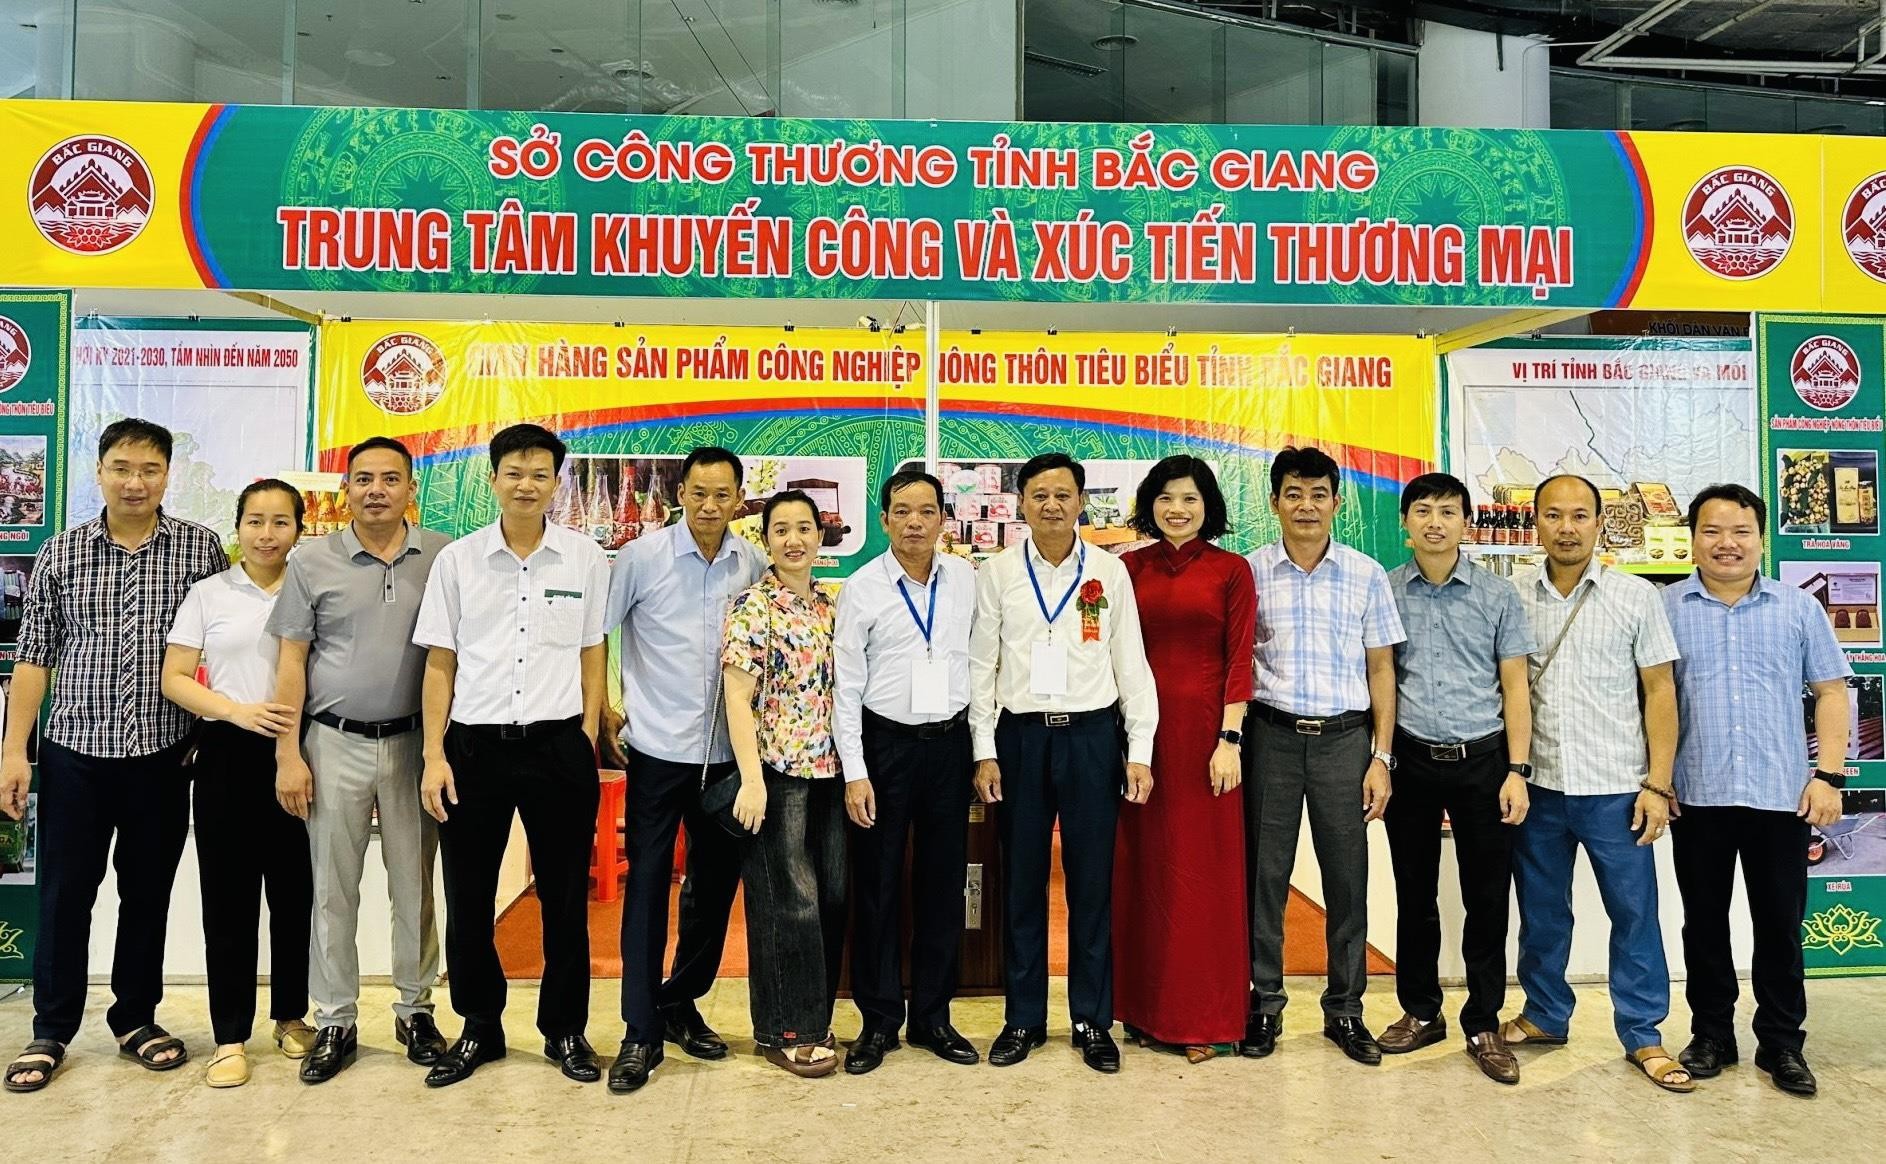   Lãnh đạo Sở Công Thương, Trung tâm khuyến công và xúc tiến thương mại tỉnh Bắc Giang chụp ảnh lưu niệm tại gian hàng